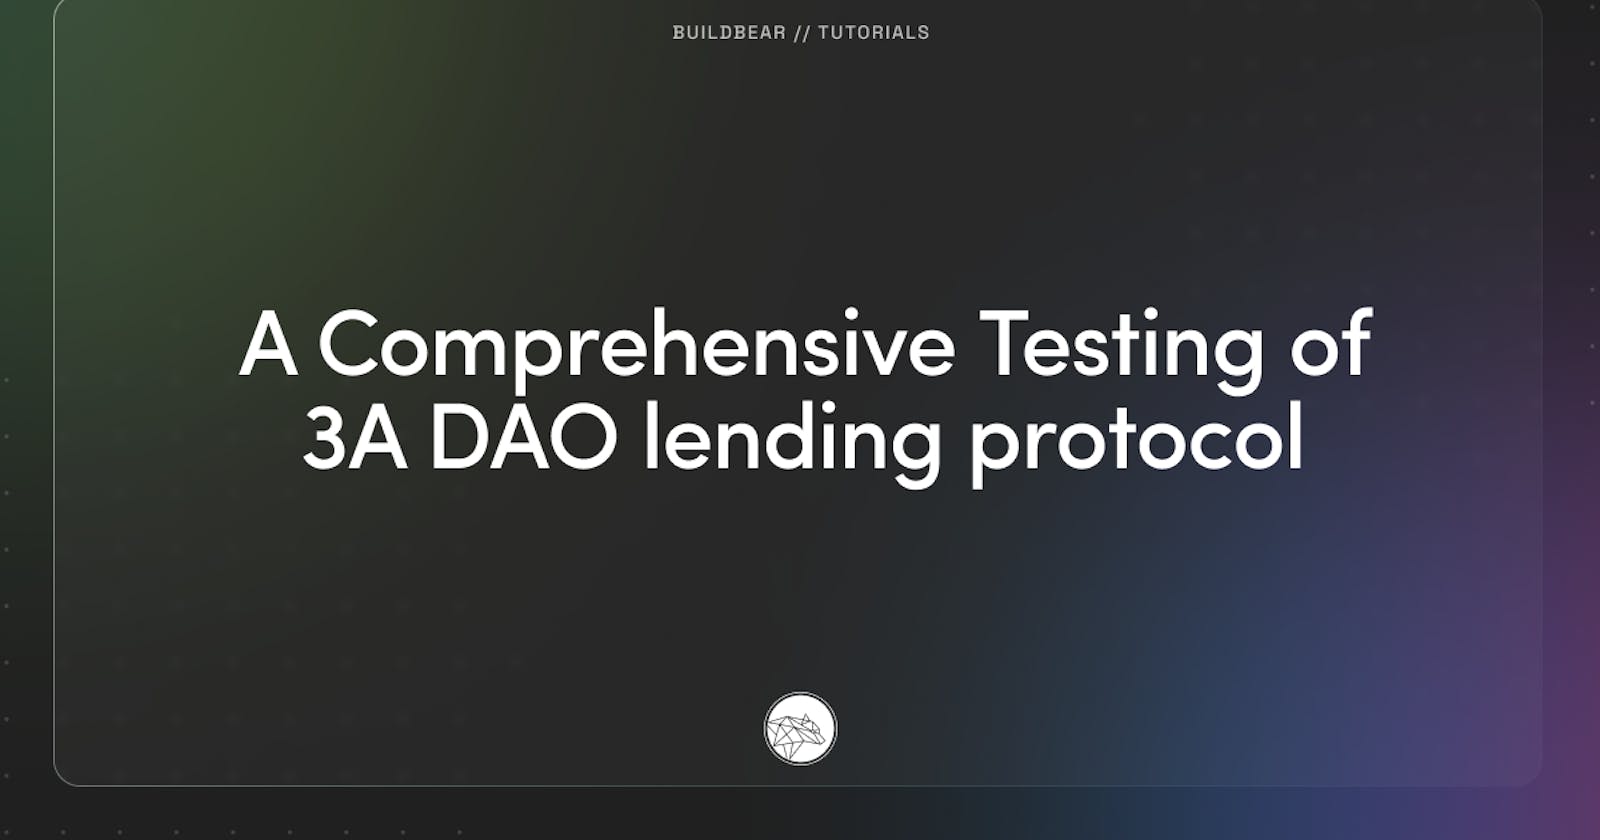 A Comprehensive Testing of 3A DAO lending protocol